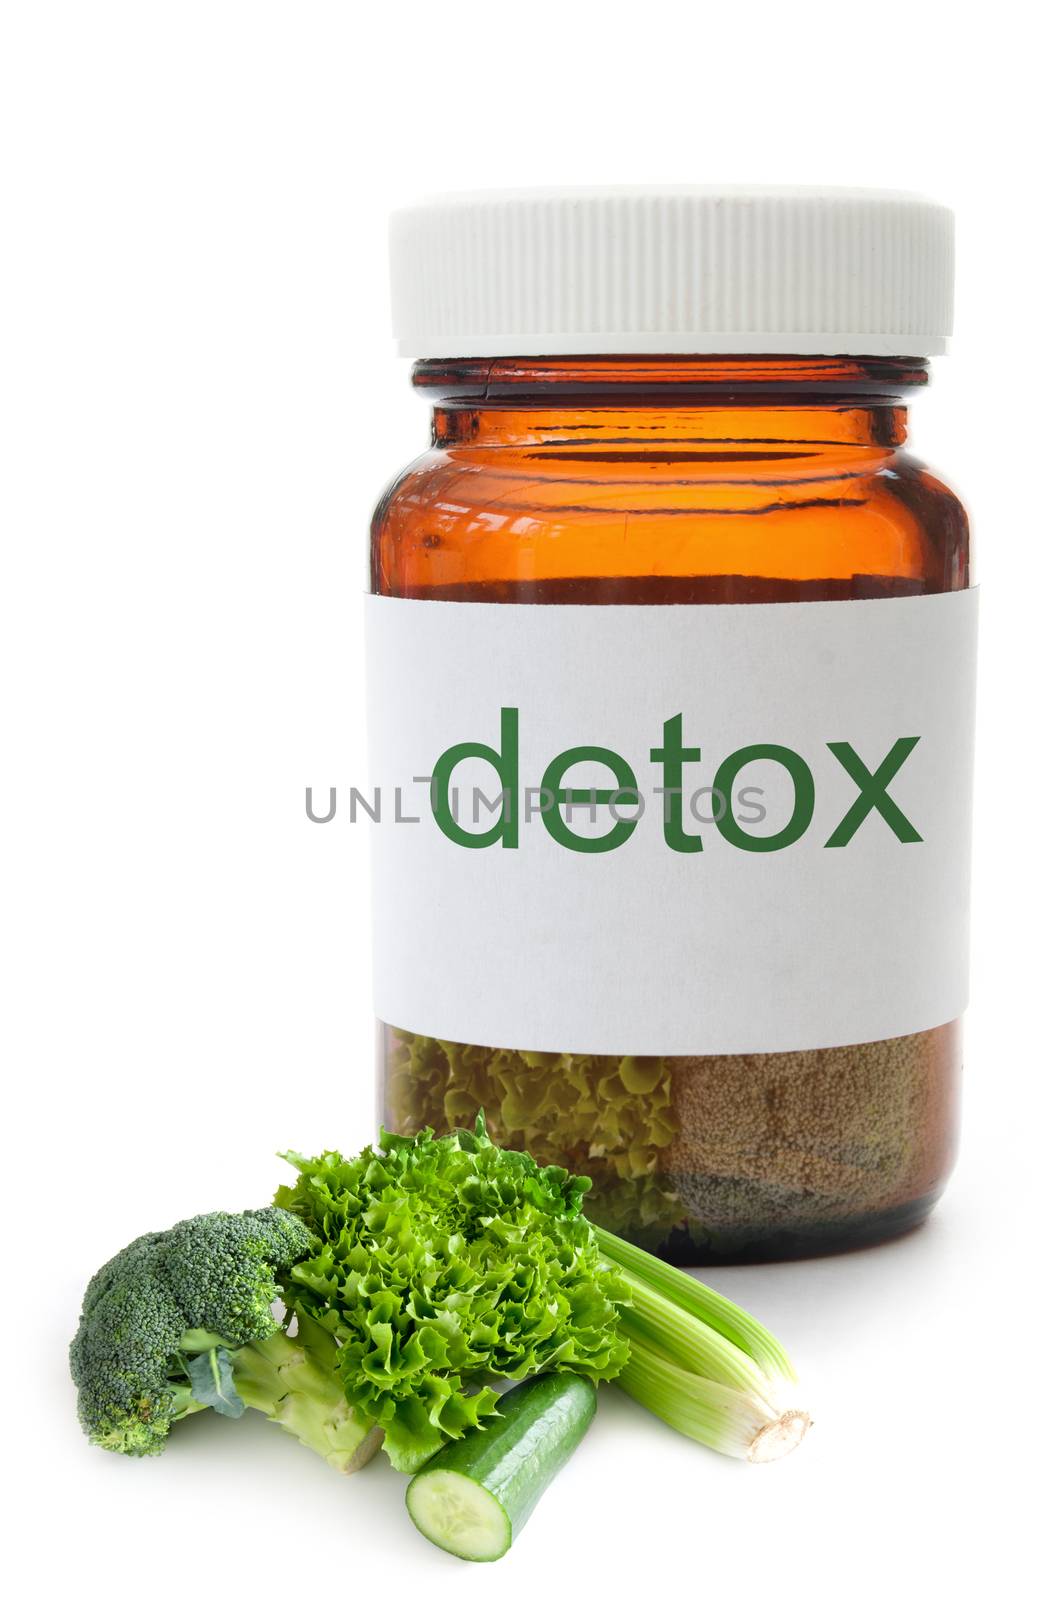 Medicine jar with detox vegetables over a white background